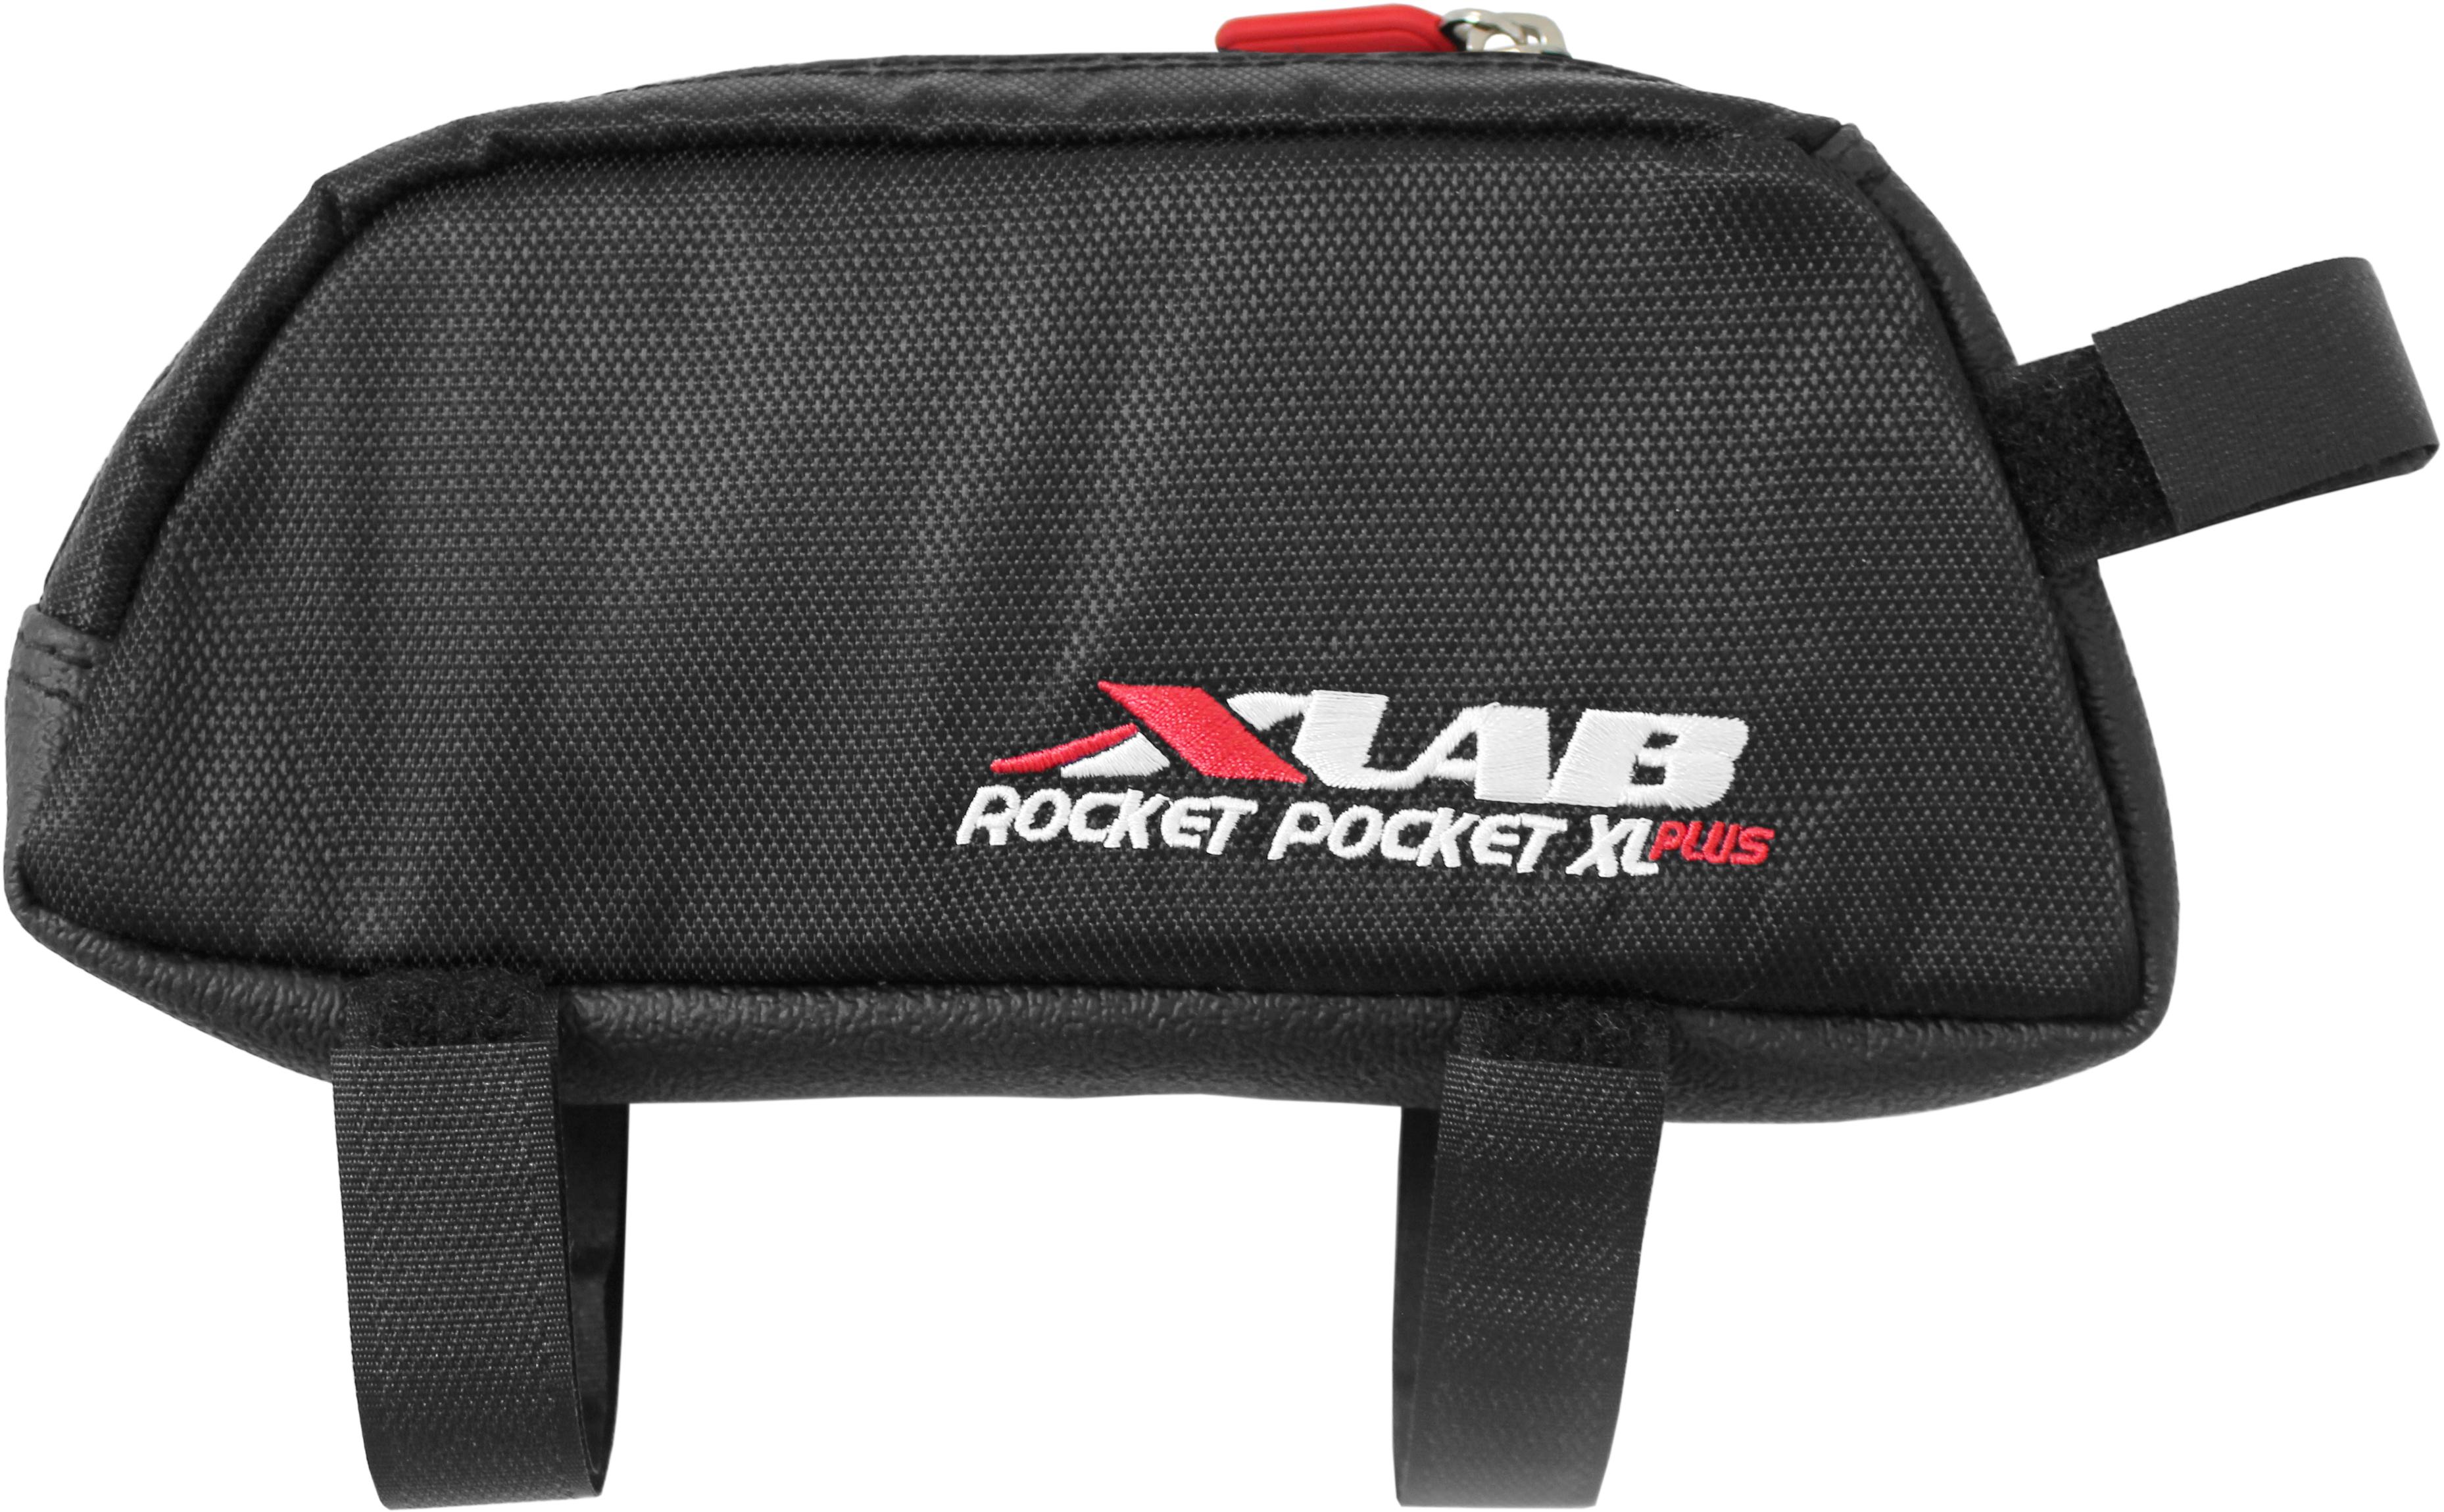 Xlab Pocket Rocket Xl Plus Tube Bag - Black